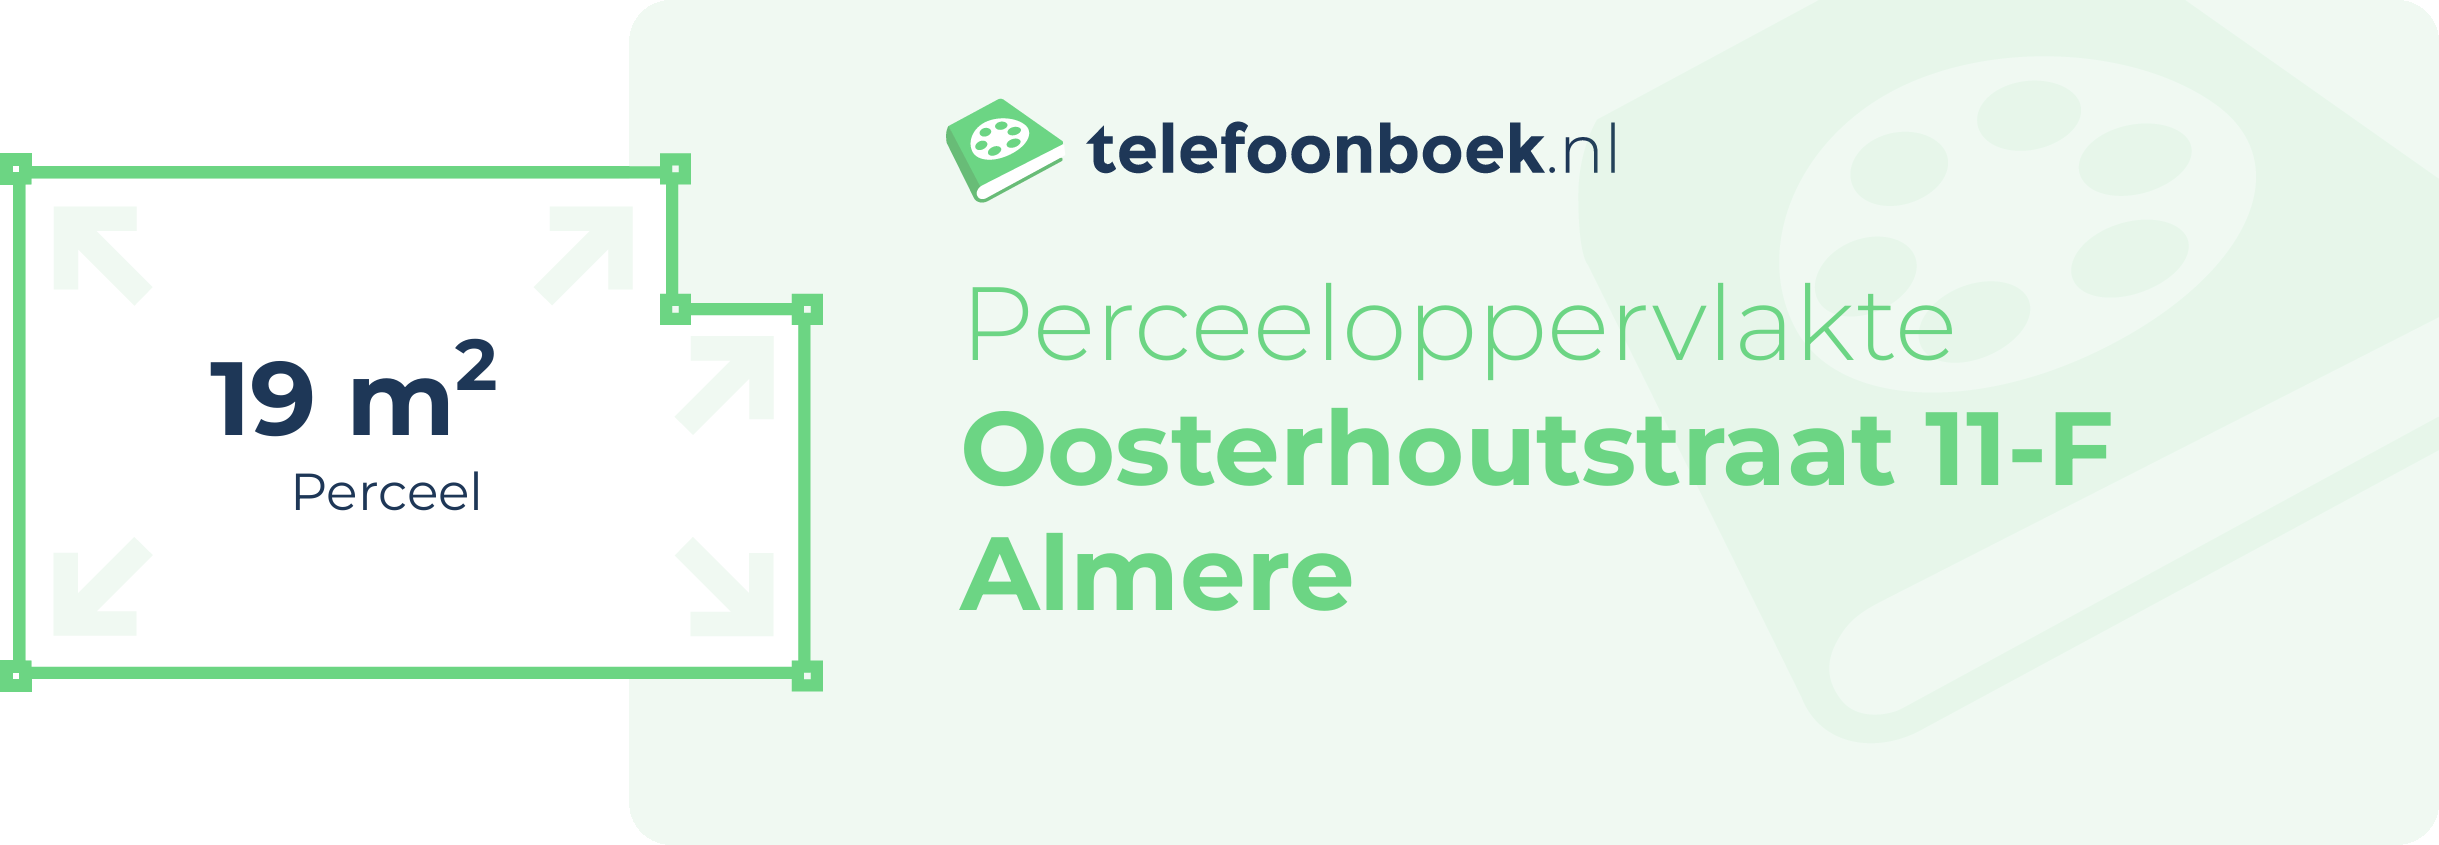 Perceeloppervlakte Oosterhoutstraat 11-F Almere